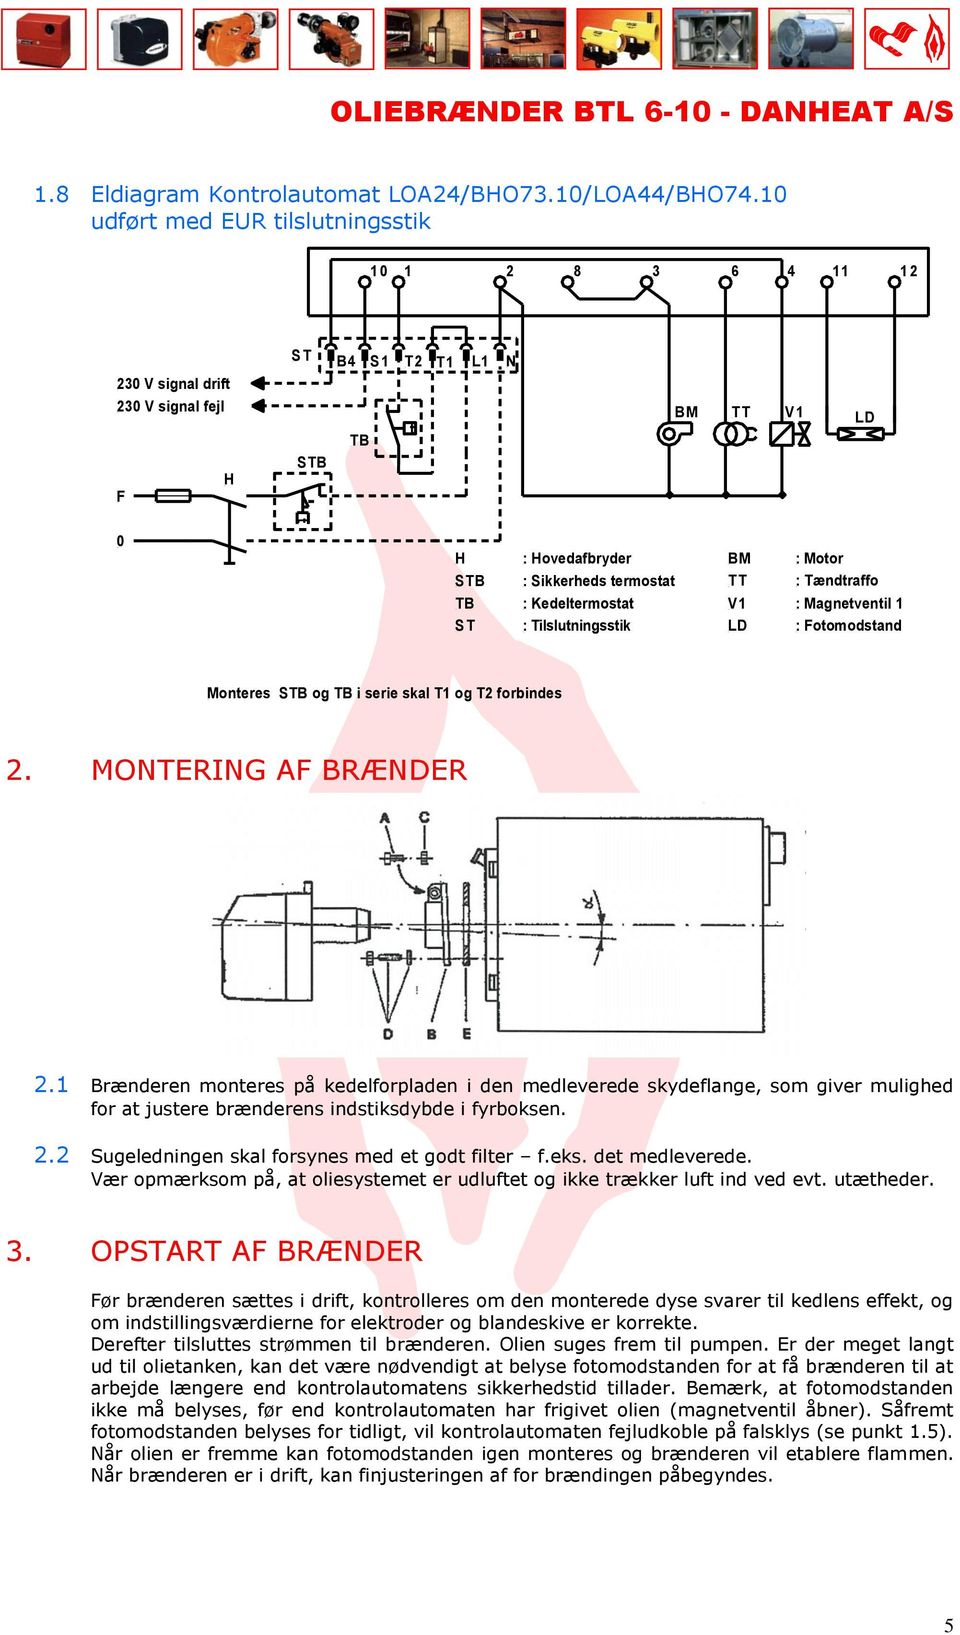 termostat : Kedeltermostat : Tilslutningsstik BM : Motor TT : Tændtraffo V1 : Magnetventil 1 LD : Fotomodstand Monteres STB og TB i serie skal T1 og T2 forbindes 2.